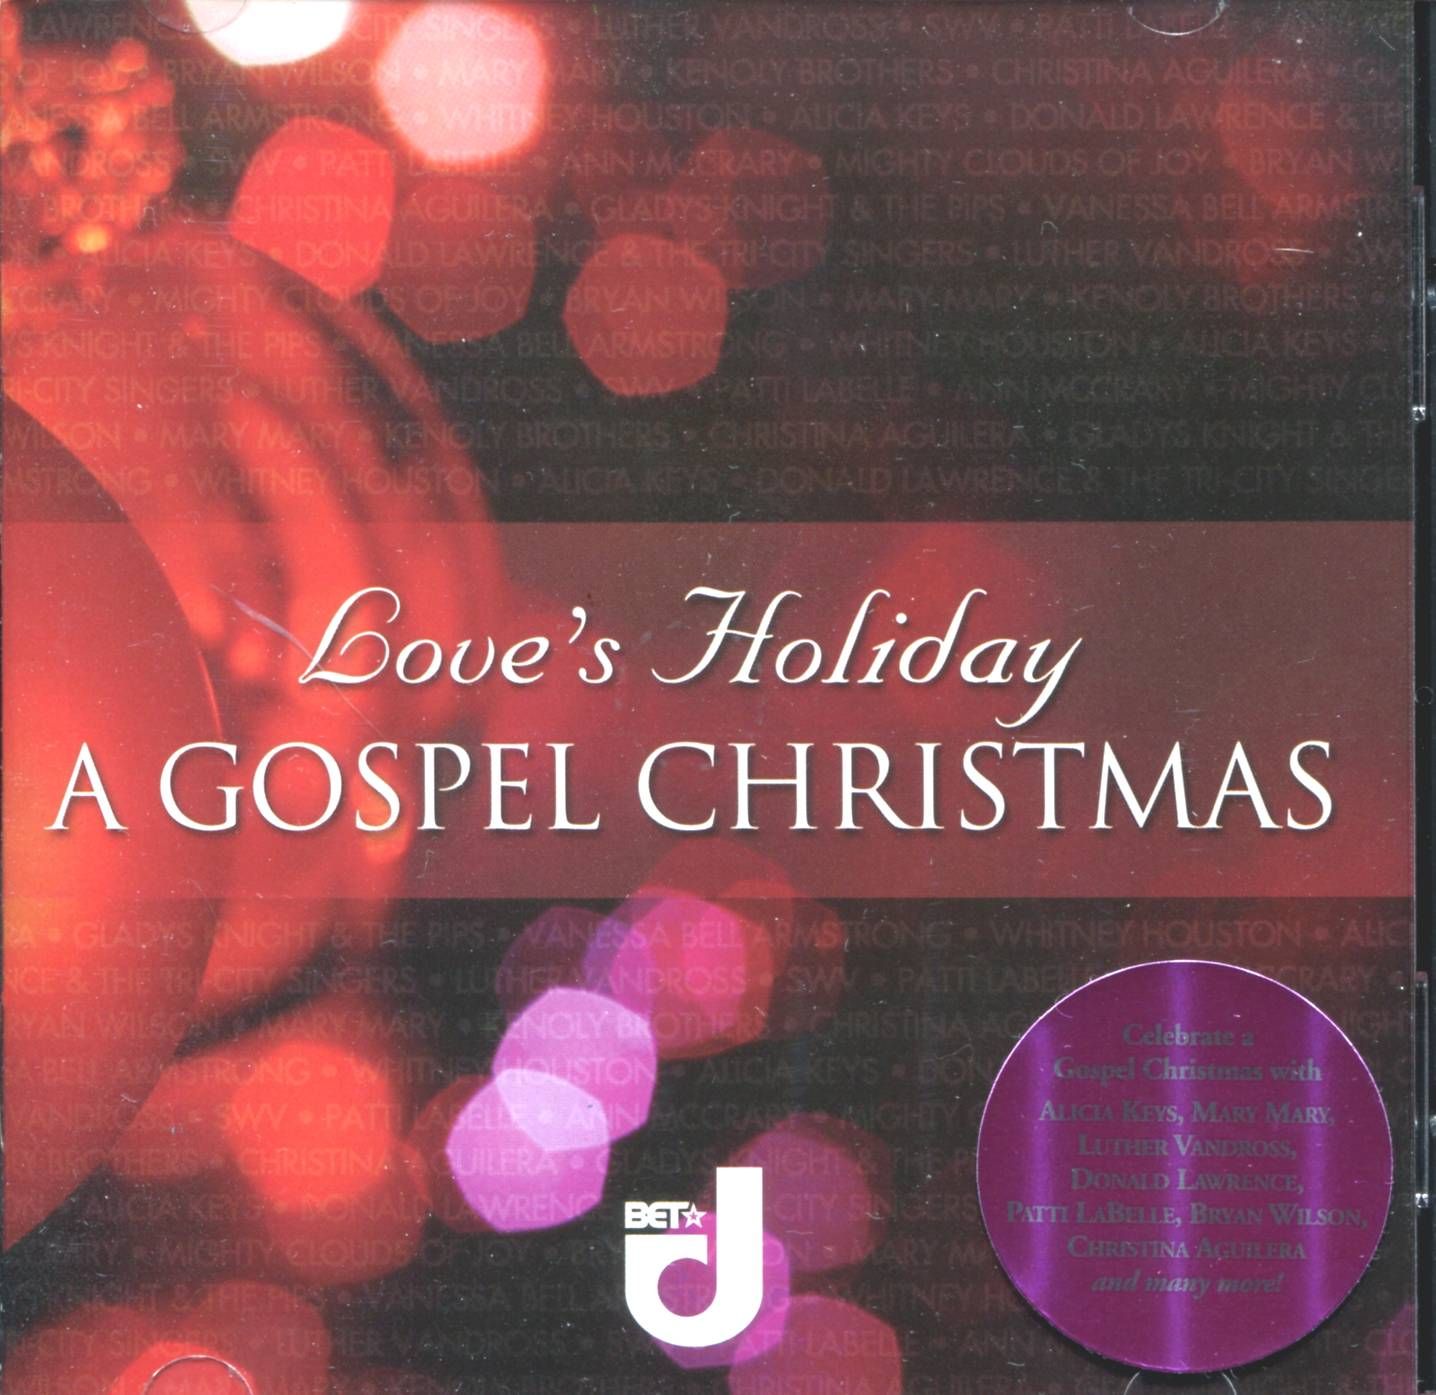   Gospel Various Whitney Houston Christmas Stereo 14 Track New CD